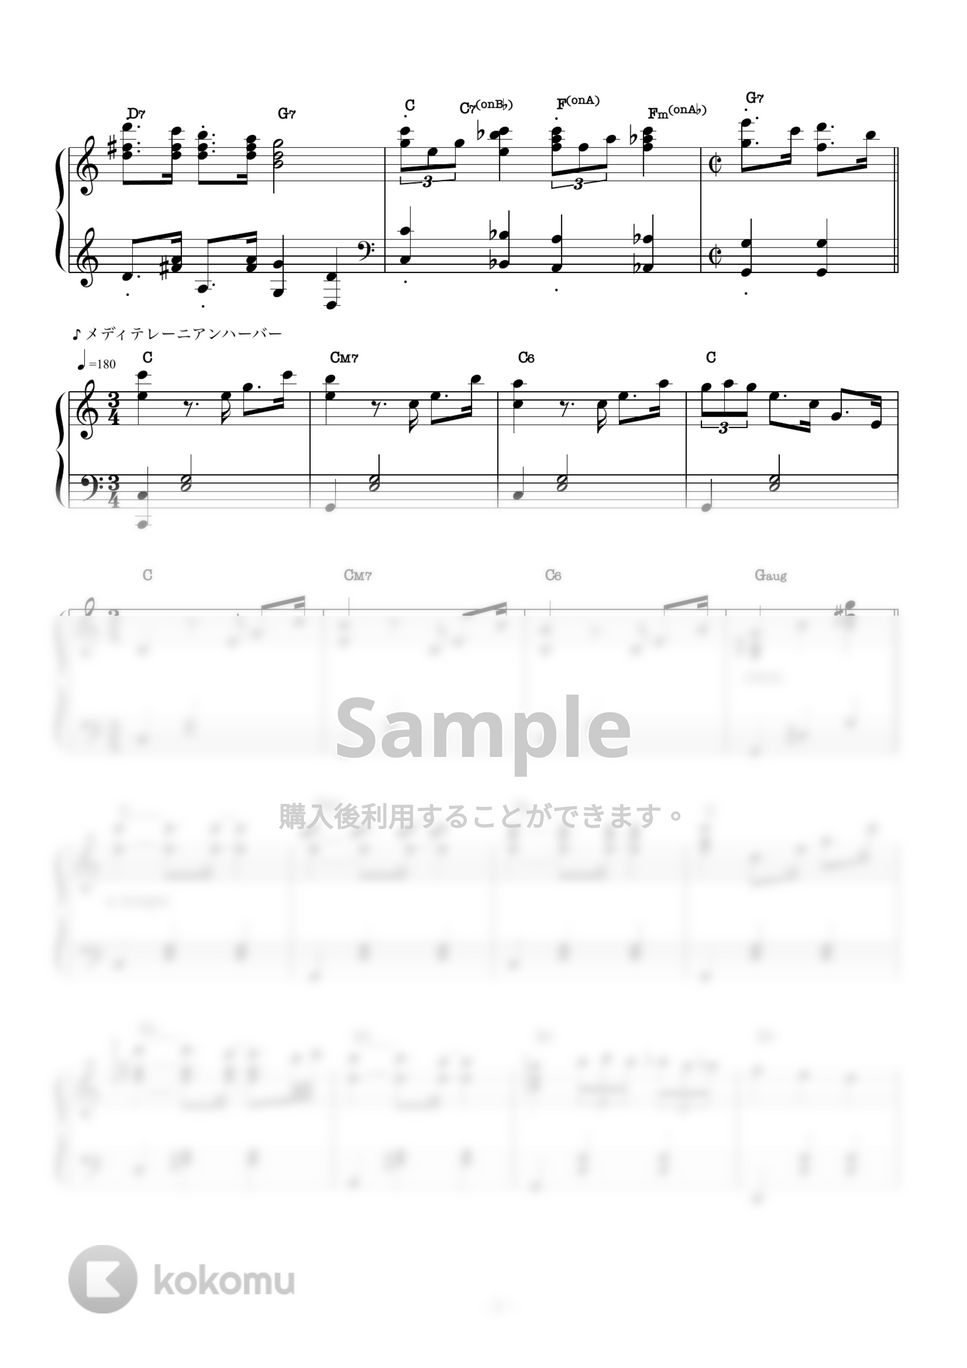 Disney - ミッキーマウスマーチ (TDSアレンジ / ピアノソロ / ディズニー / コード有) by CAFUNE-かふね-